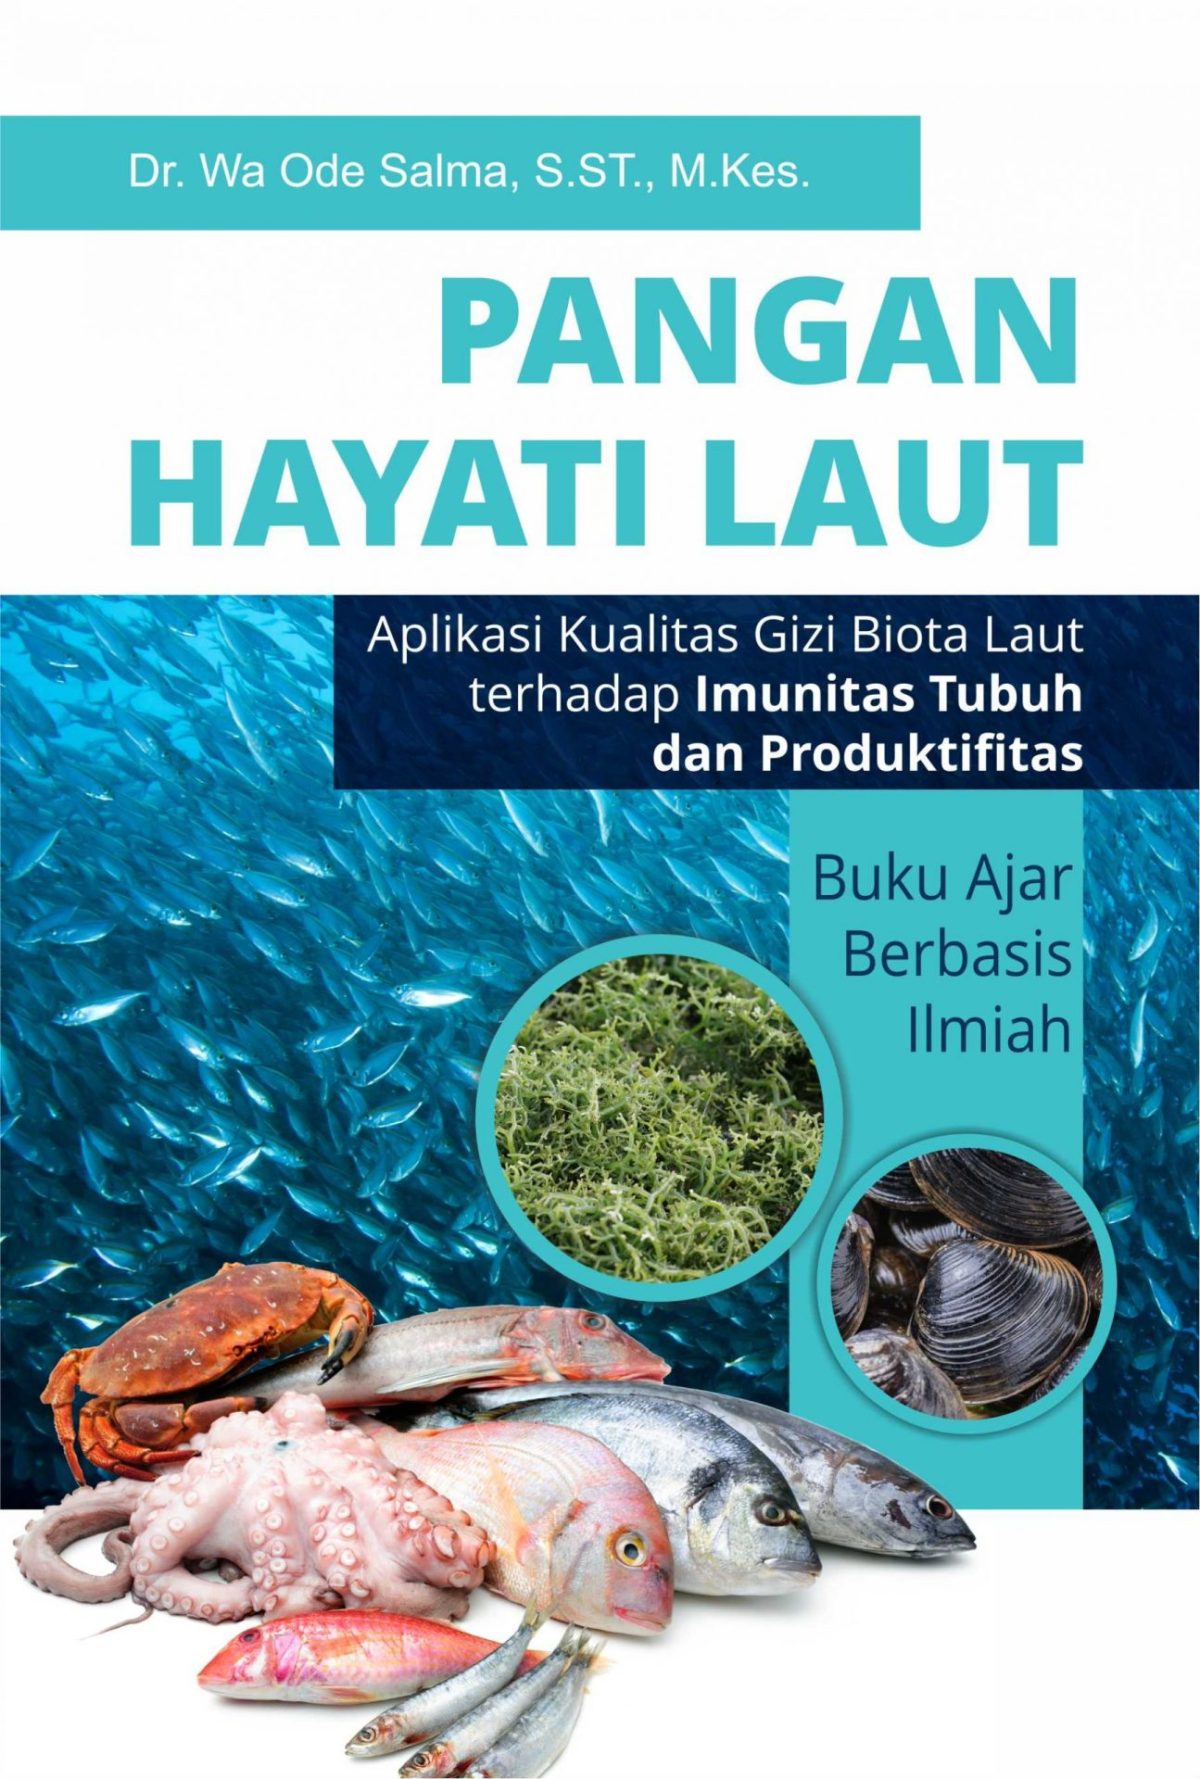 Pangan Hayati Laut (Aplikasi Kualitas Gizi Biota Laut terhadap Imunitas Tubuh dan Produktifitas) Buku Ajar berbasis Ilmiah